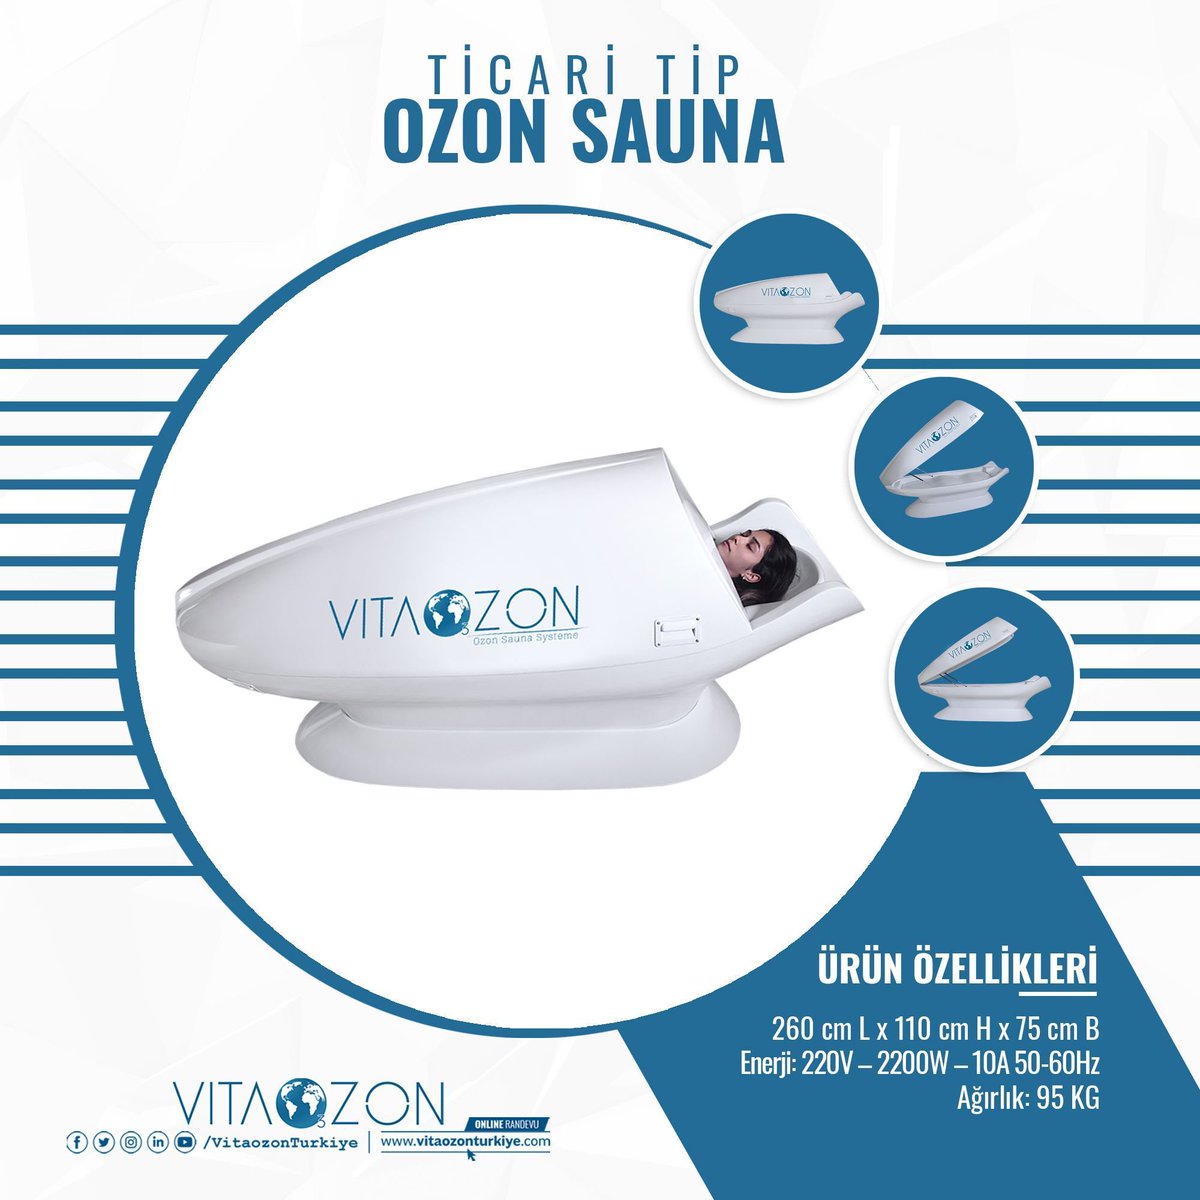 Ticari tip ozon sauna'yı işyerinizde ticari amaçlı kullanabilir, sağlık kulüplerimizden biri olabilirsiniz!
#ozonsauna #ozonterapi #kiloverme #zayıflama #antiagign #ozontedavisi #ozonyağı #ciltsağlığı #ciltgenclestirme #vitaozon